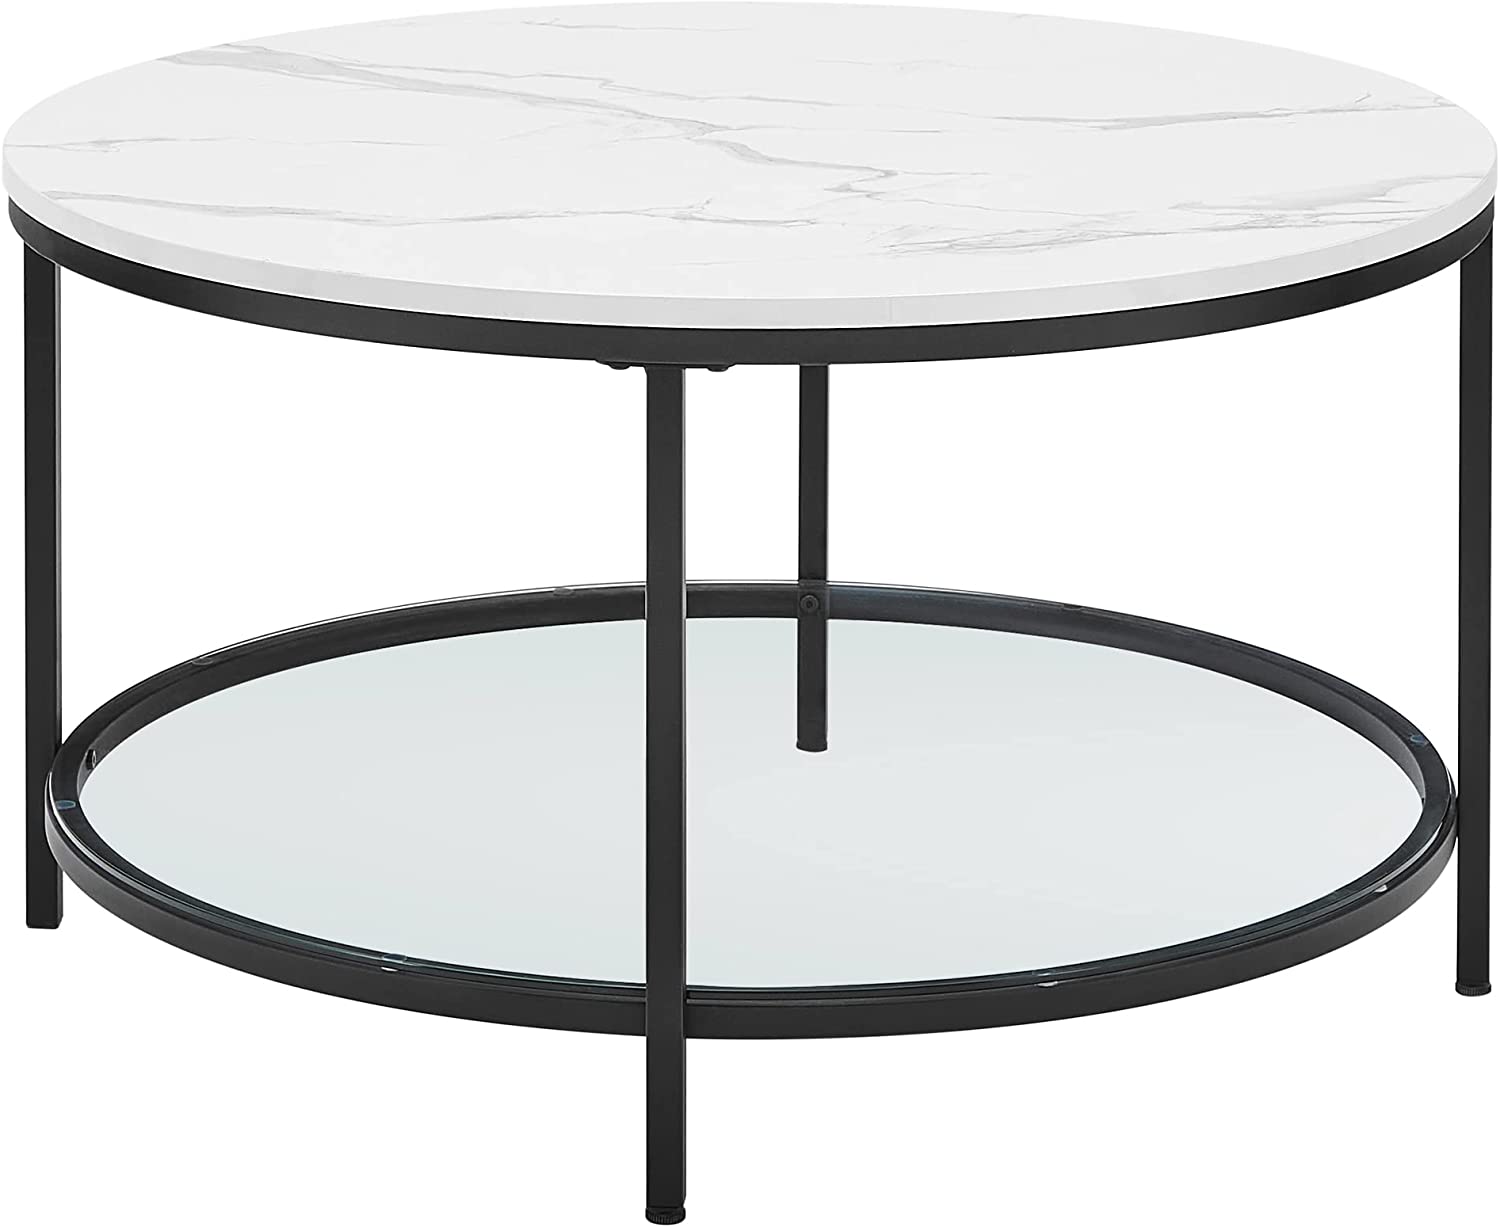 Table basse façon marbre blanche et noire avec support en verre trempé, facile à assembler VASAGLE